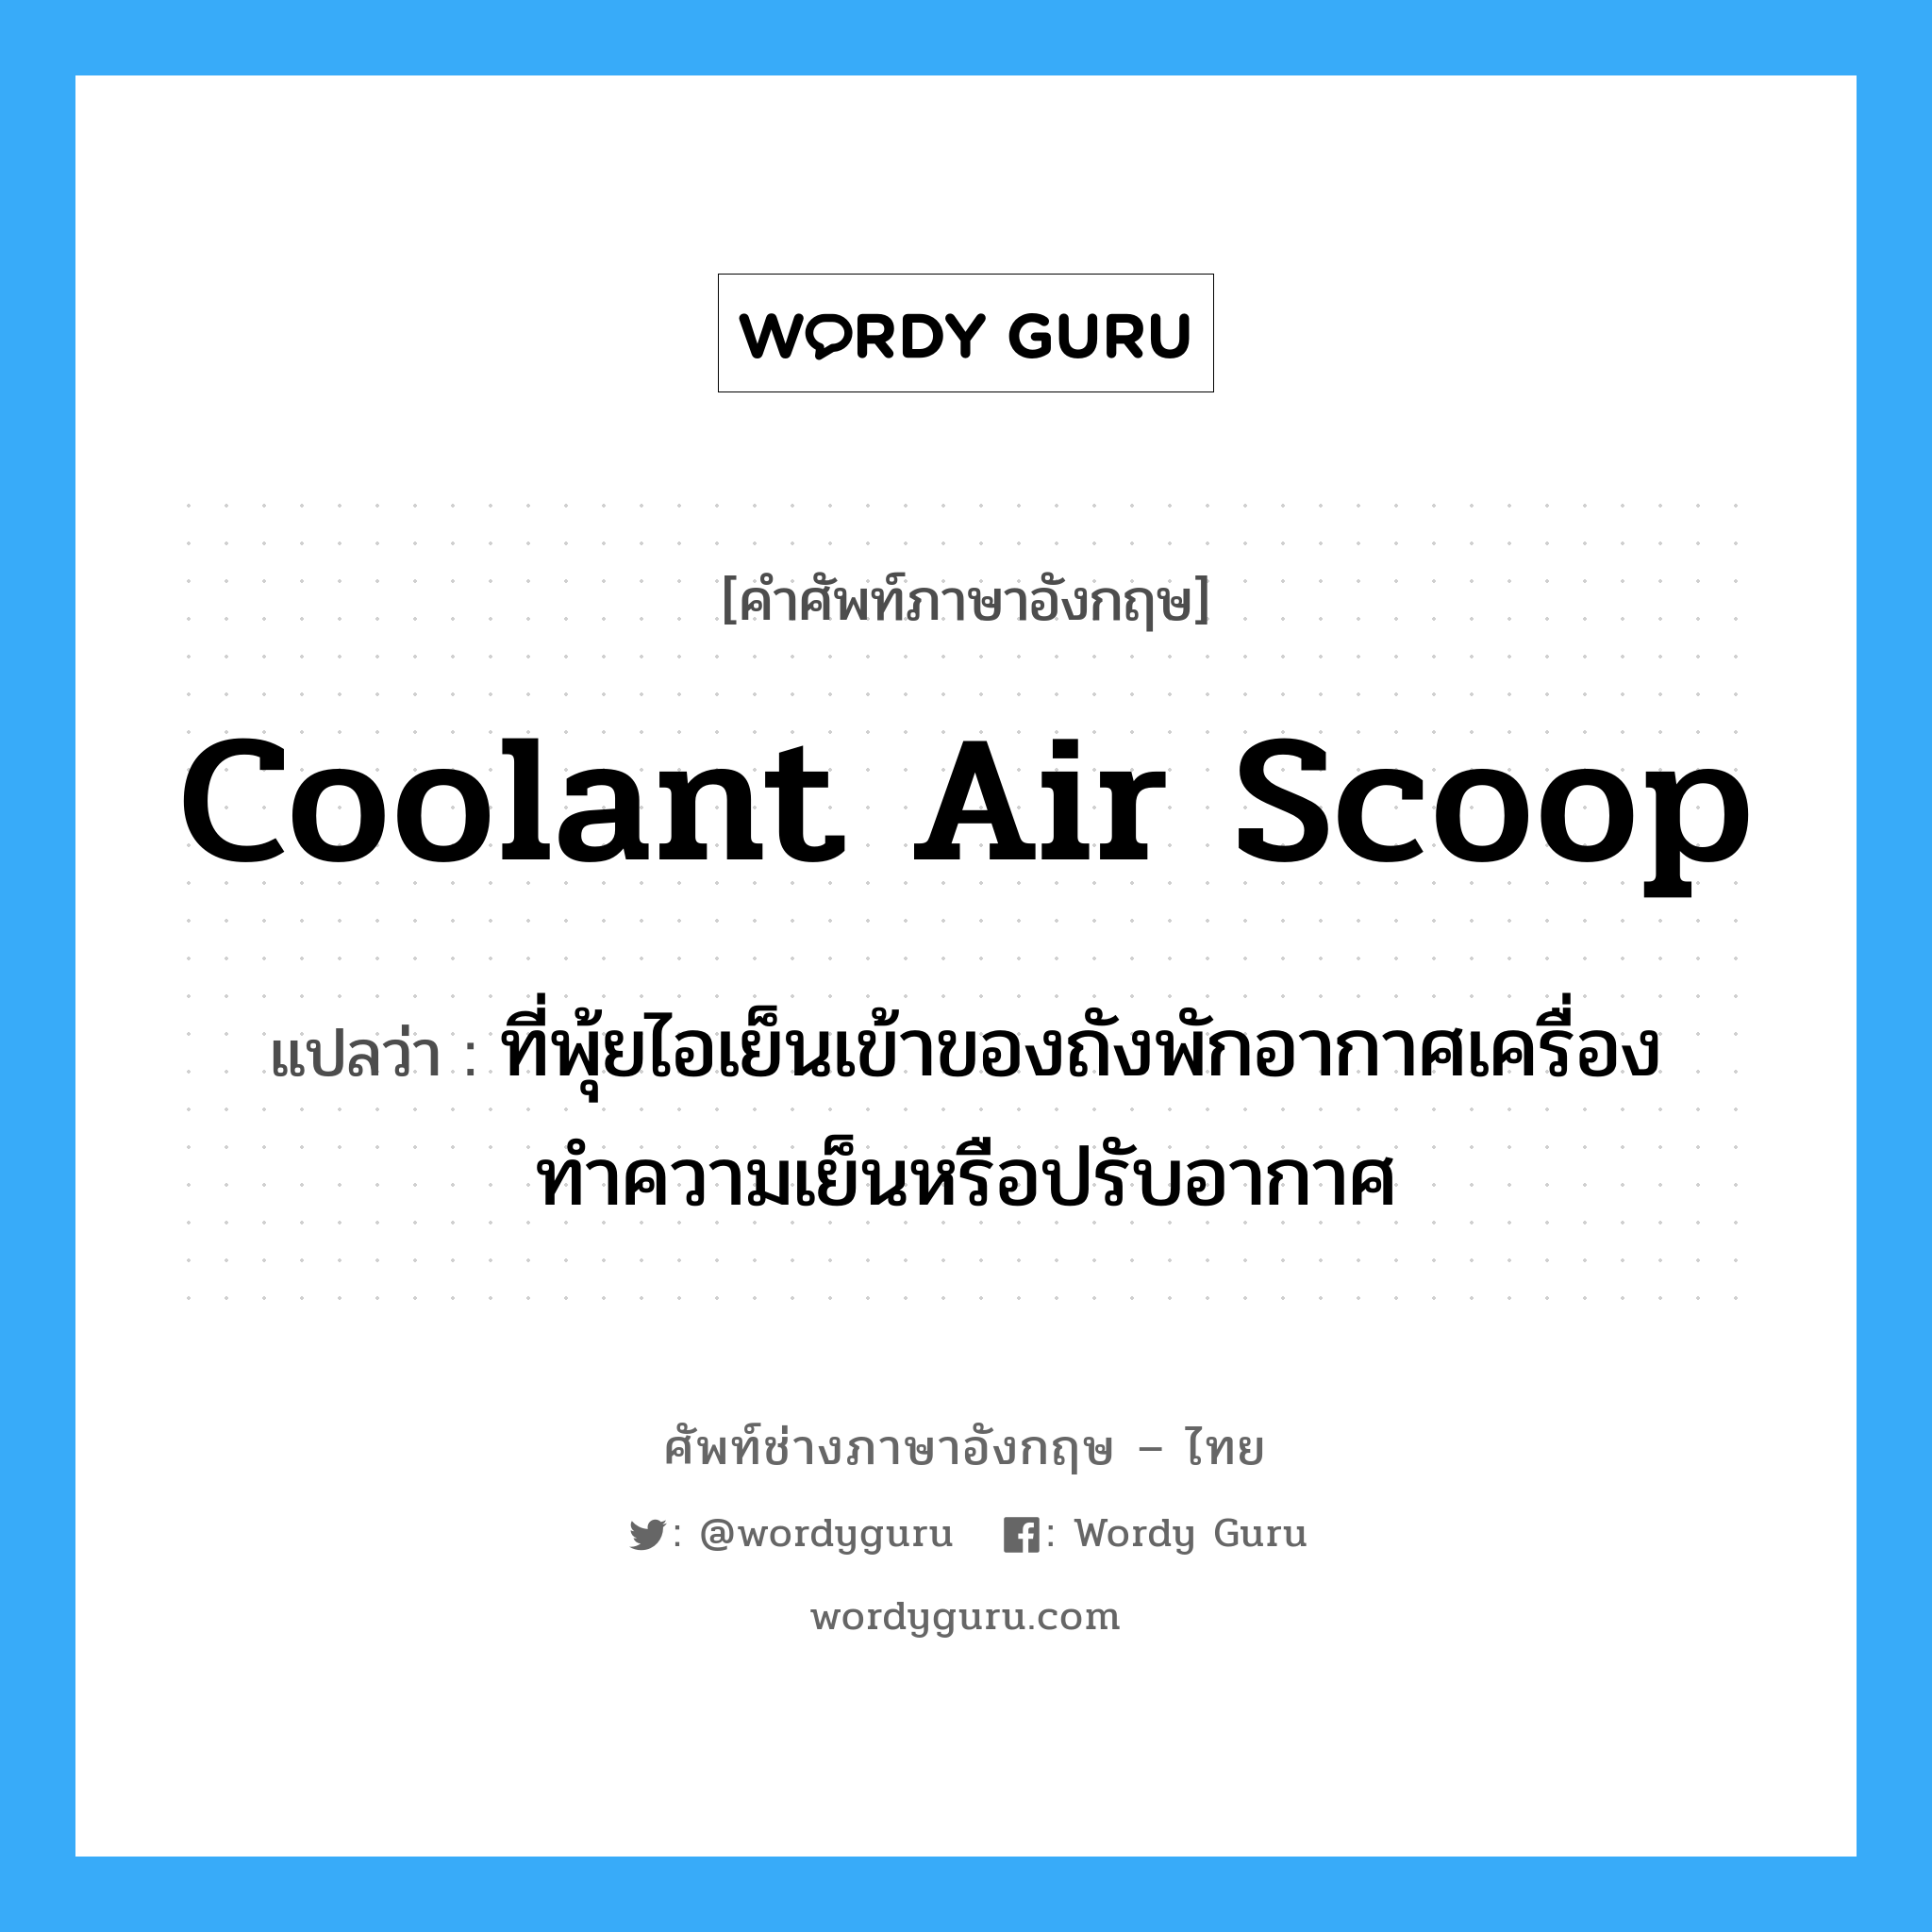 coolant air scoop แปลว่า?, คำศัพท์ช่างภาษาอังกฤษ - ไทย coolant air scoop คำศัพท์ภาษาอังกฤษ coolant air scoop แปลว่า ที่พุ้ยไอเย็นเข้าของถังพักอากาศเครื่องทำความเย็นหรือปรับอากาศ